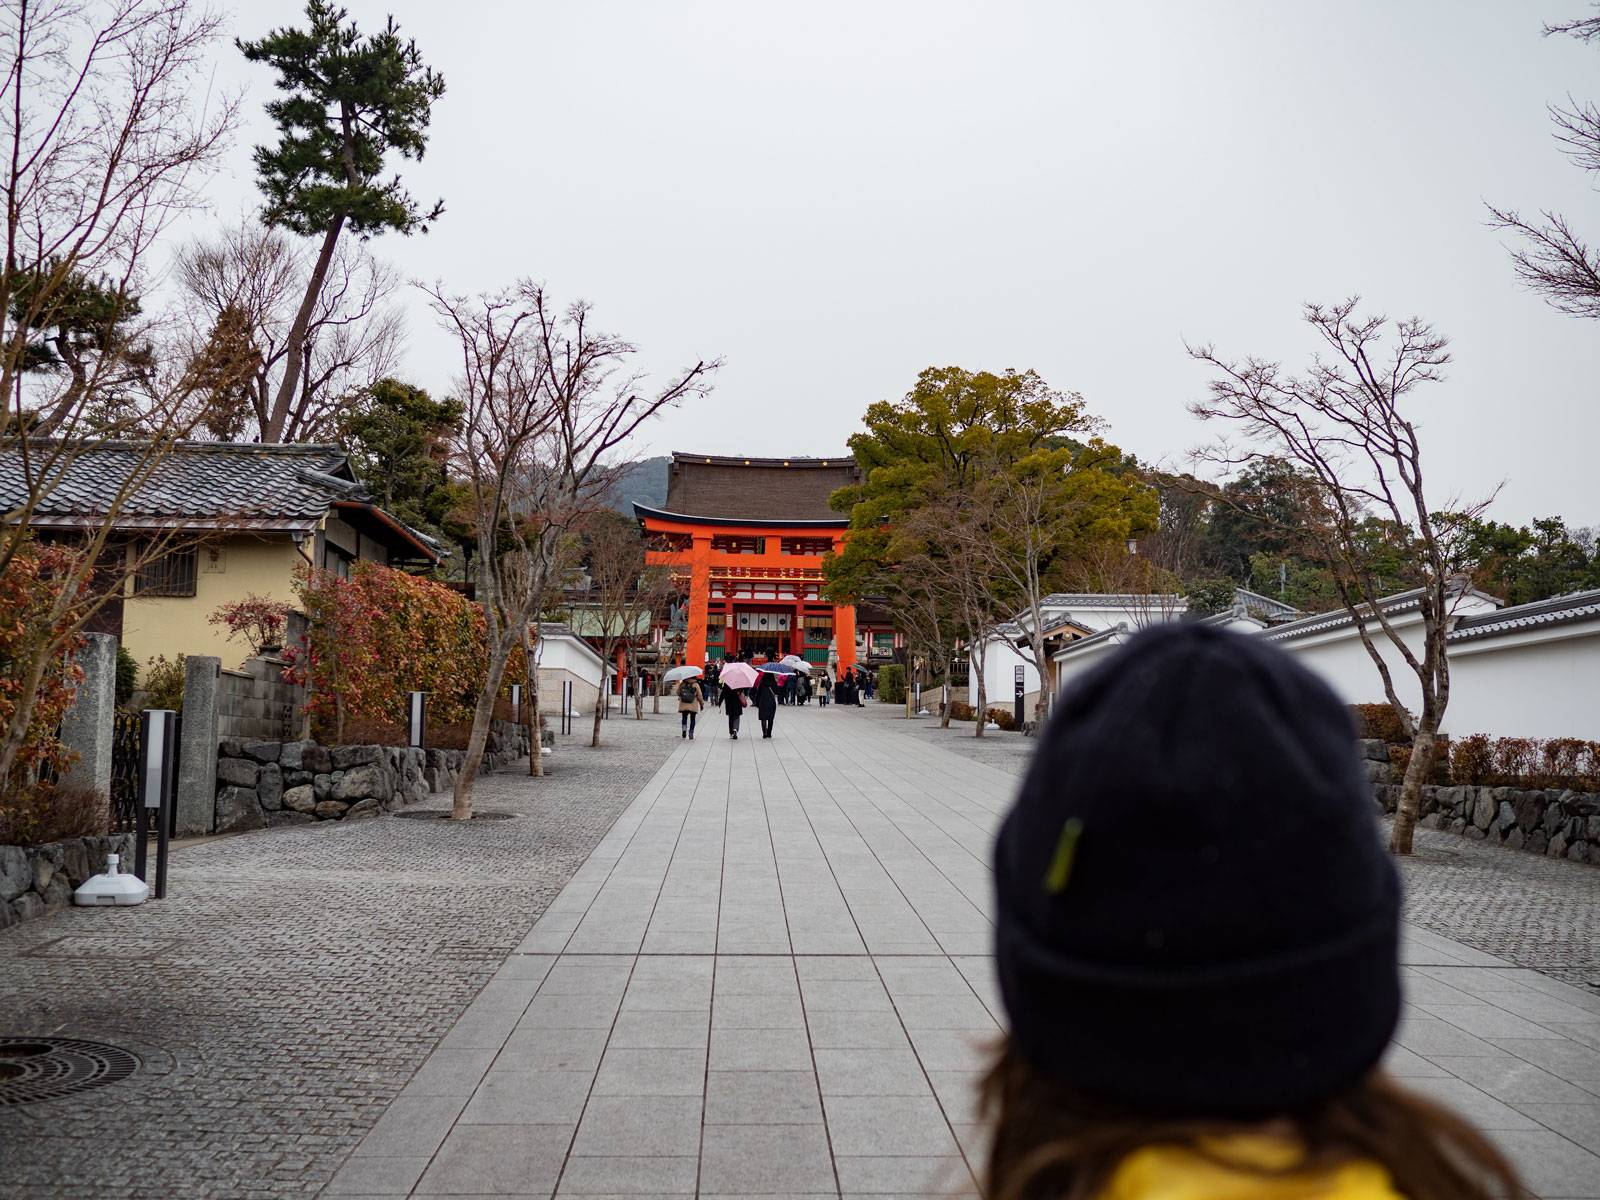 Walking through Fushimi Inari Taisha